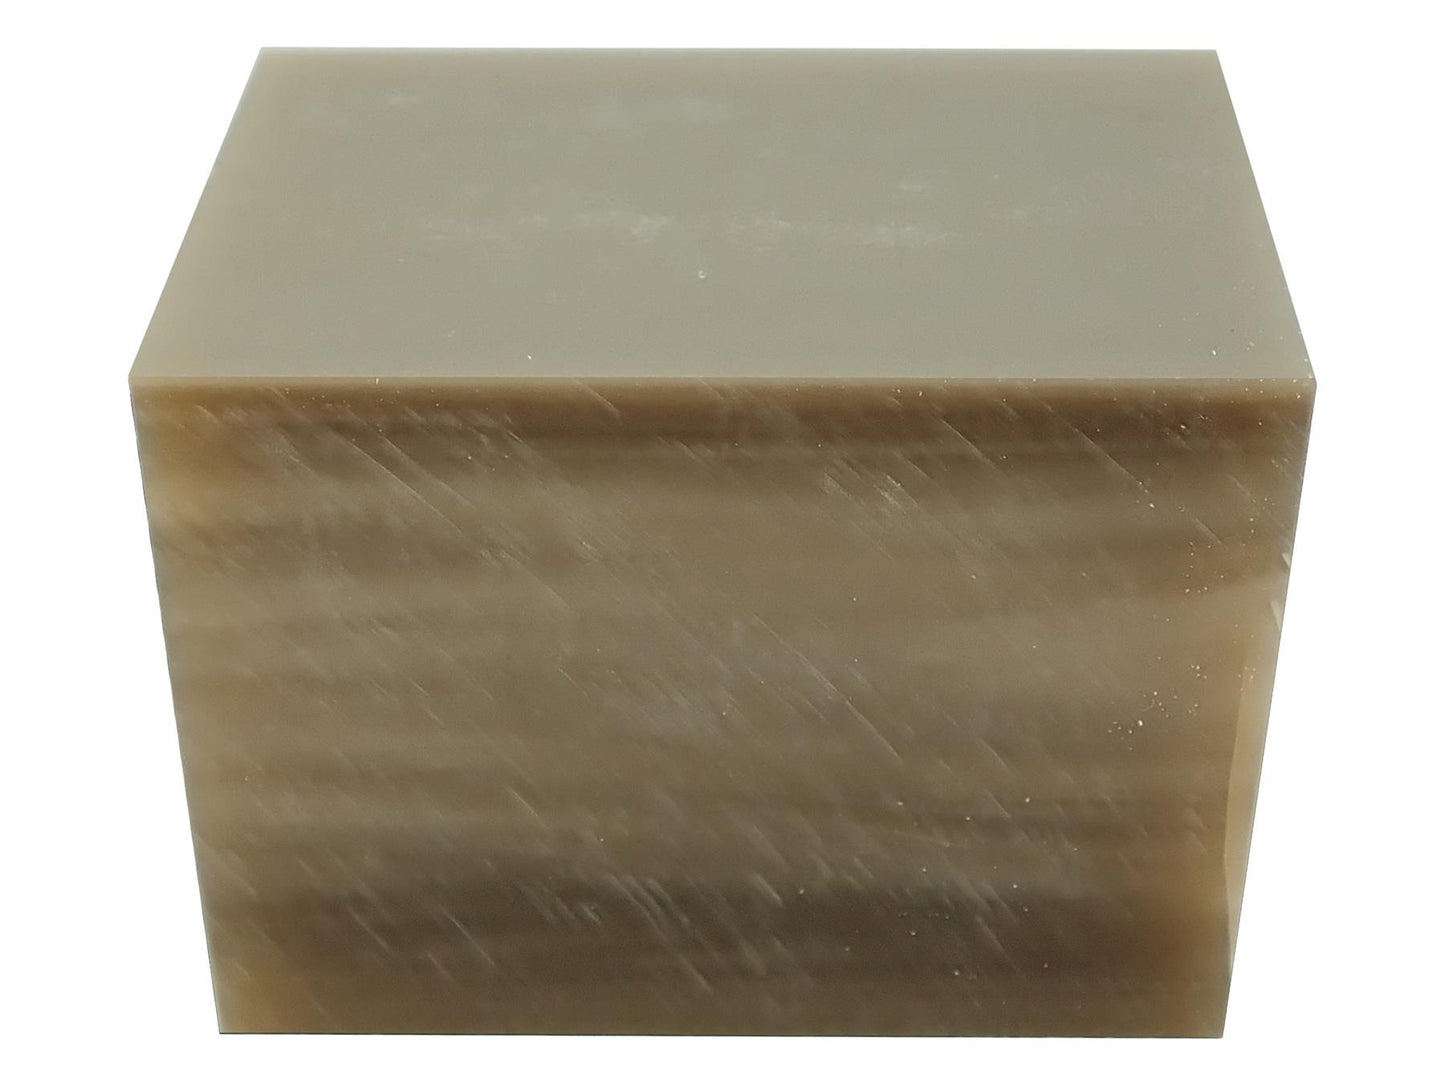 Turners' Mill Hot Tan Pearl Kirinite Acrylic Block - 64x42x42mm (2.5x1.65x1.65")